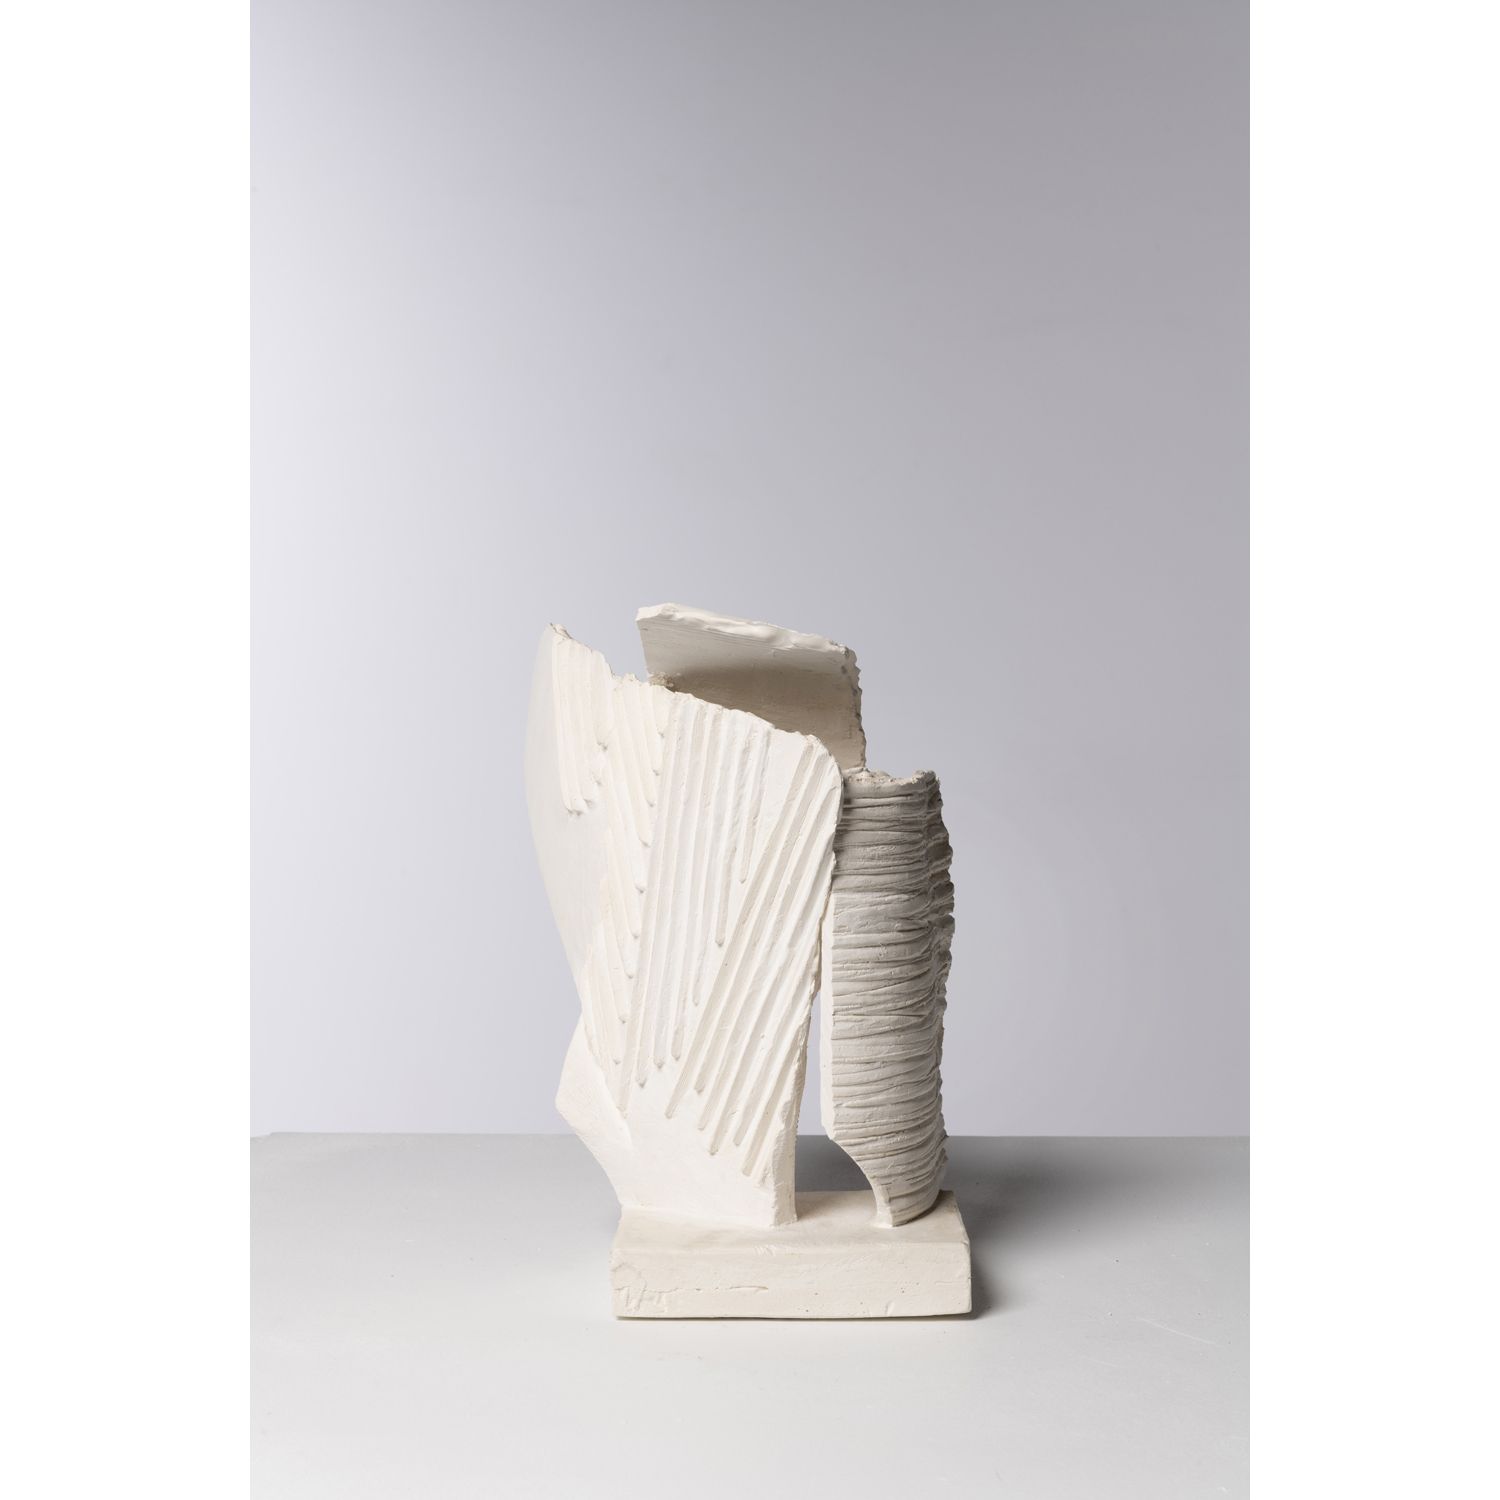 Viviane Hayez (1930-2017) Sculpture Viviane Hayez (1930-2017)

Skulptur 

Gips

&hellip;